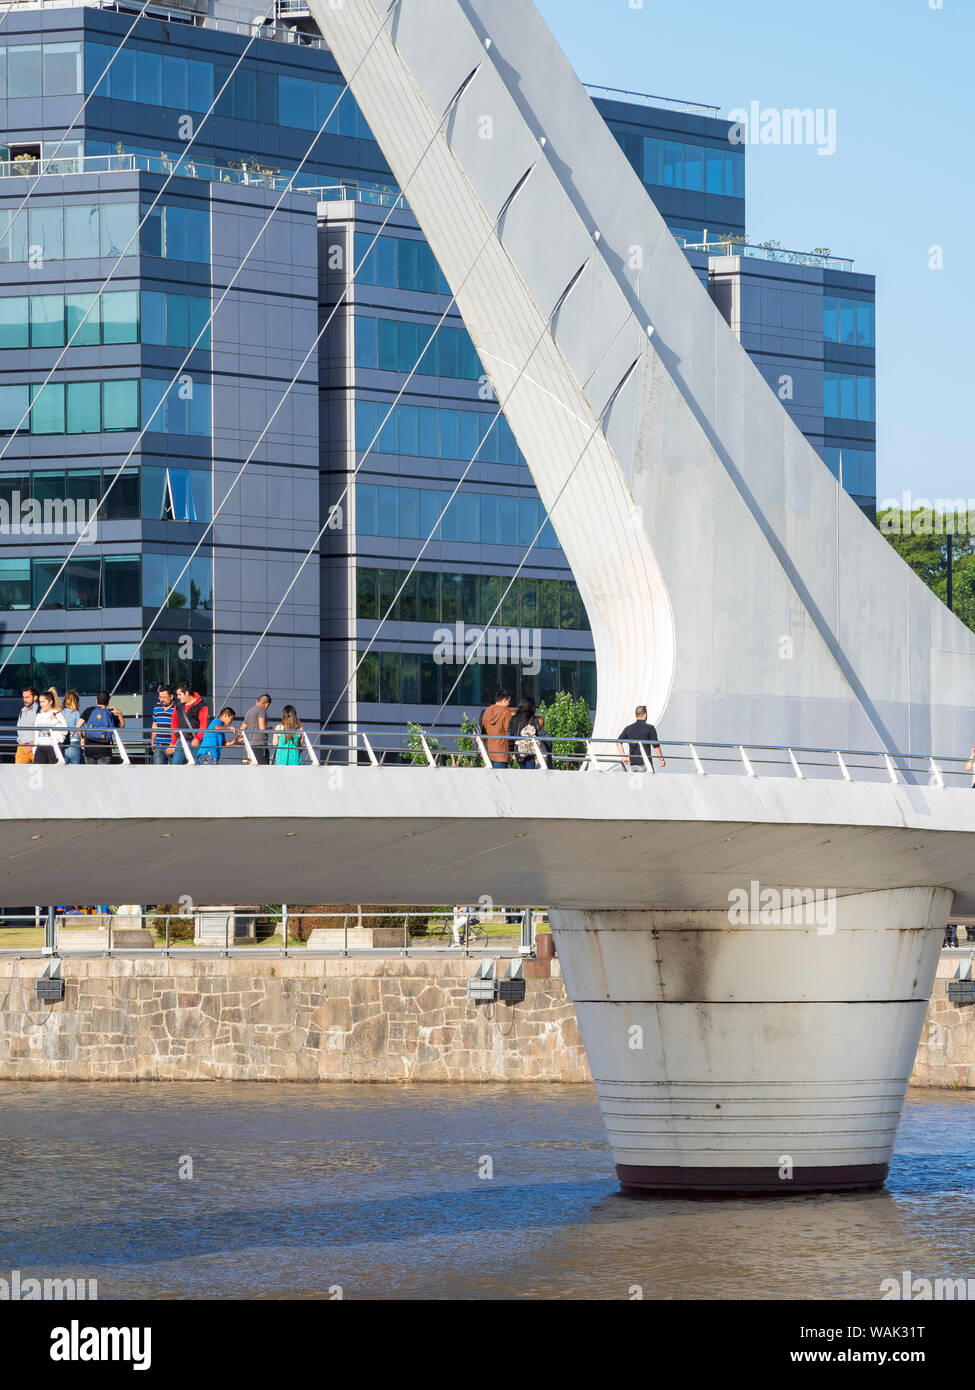 Puente de la Mujer, une passerelle tournante conçu par l'architecte Santiago Calatrava. Puerto Madero, le quartier autour de la vie moderne le vieux quai de Buenos Aires. L'Amérique du Sud, l'Argentine. (Usage éditorial uniquement) Banque D'Images